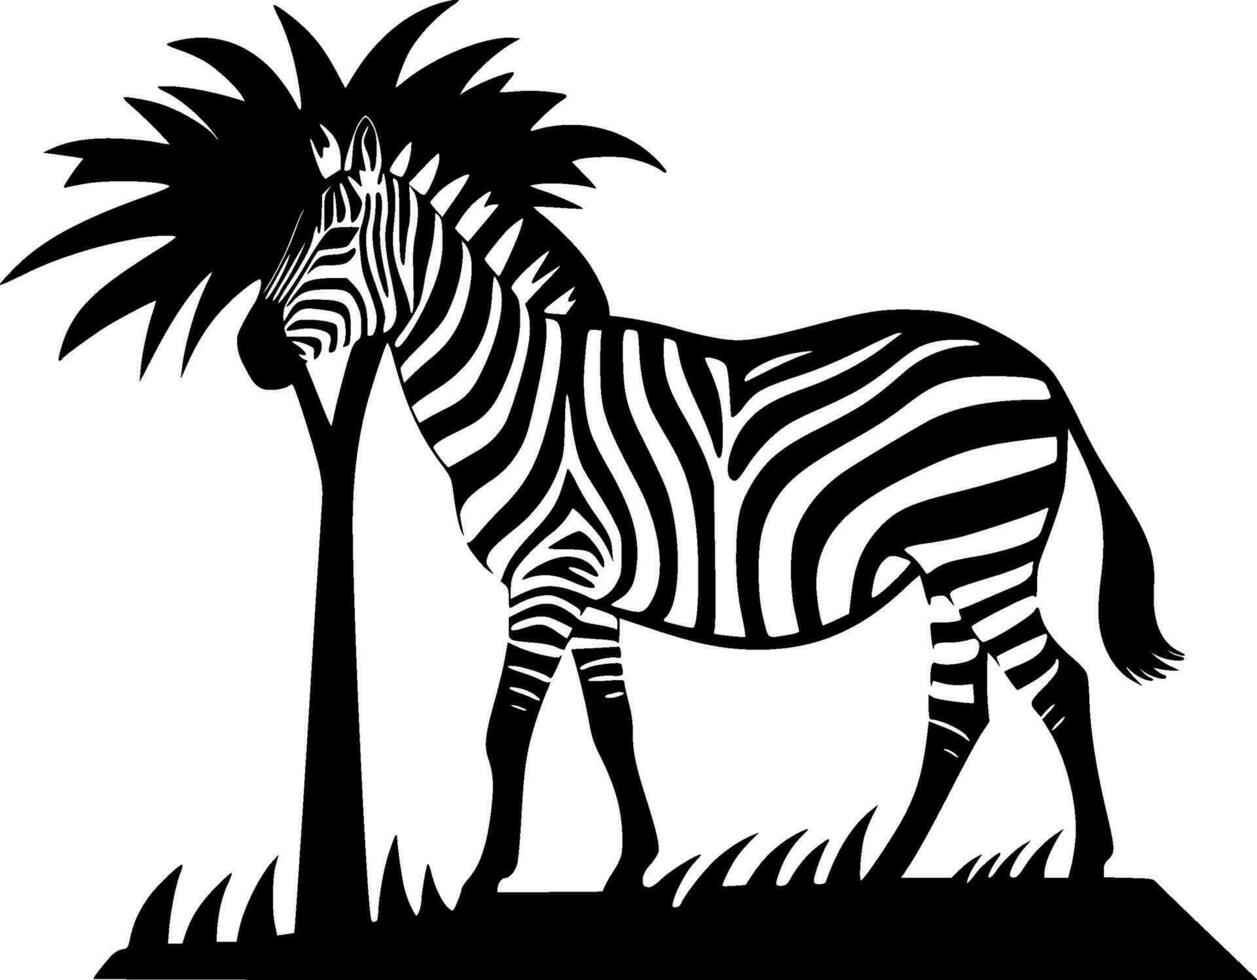 afrika - svart och vit isolerat ikon - vektor illustration